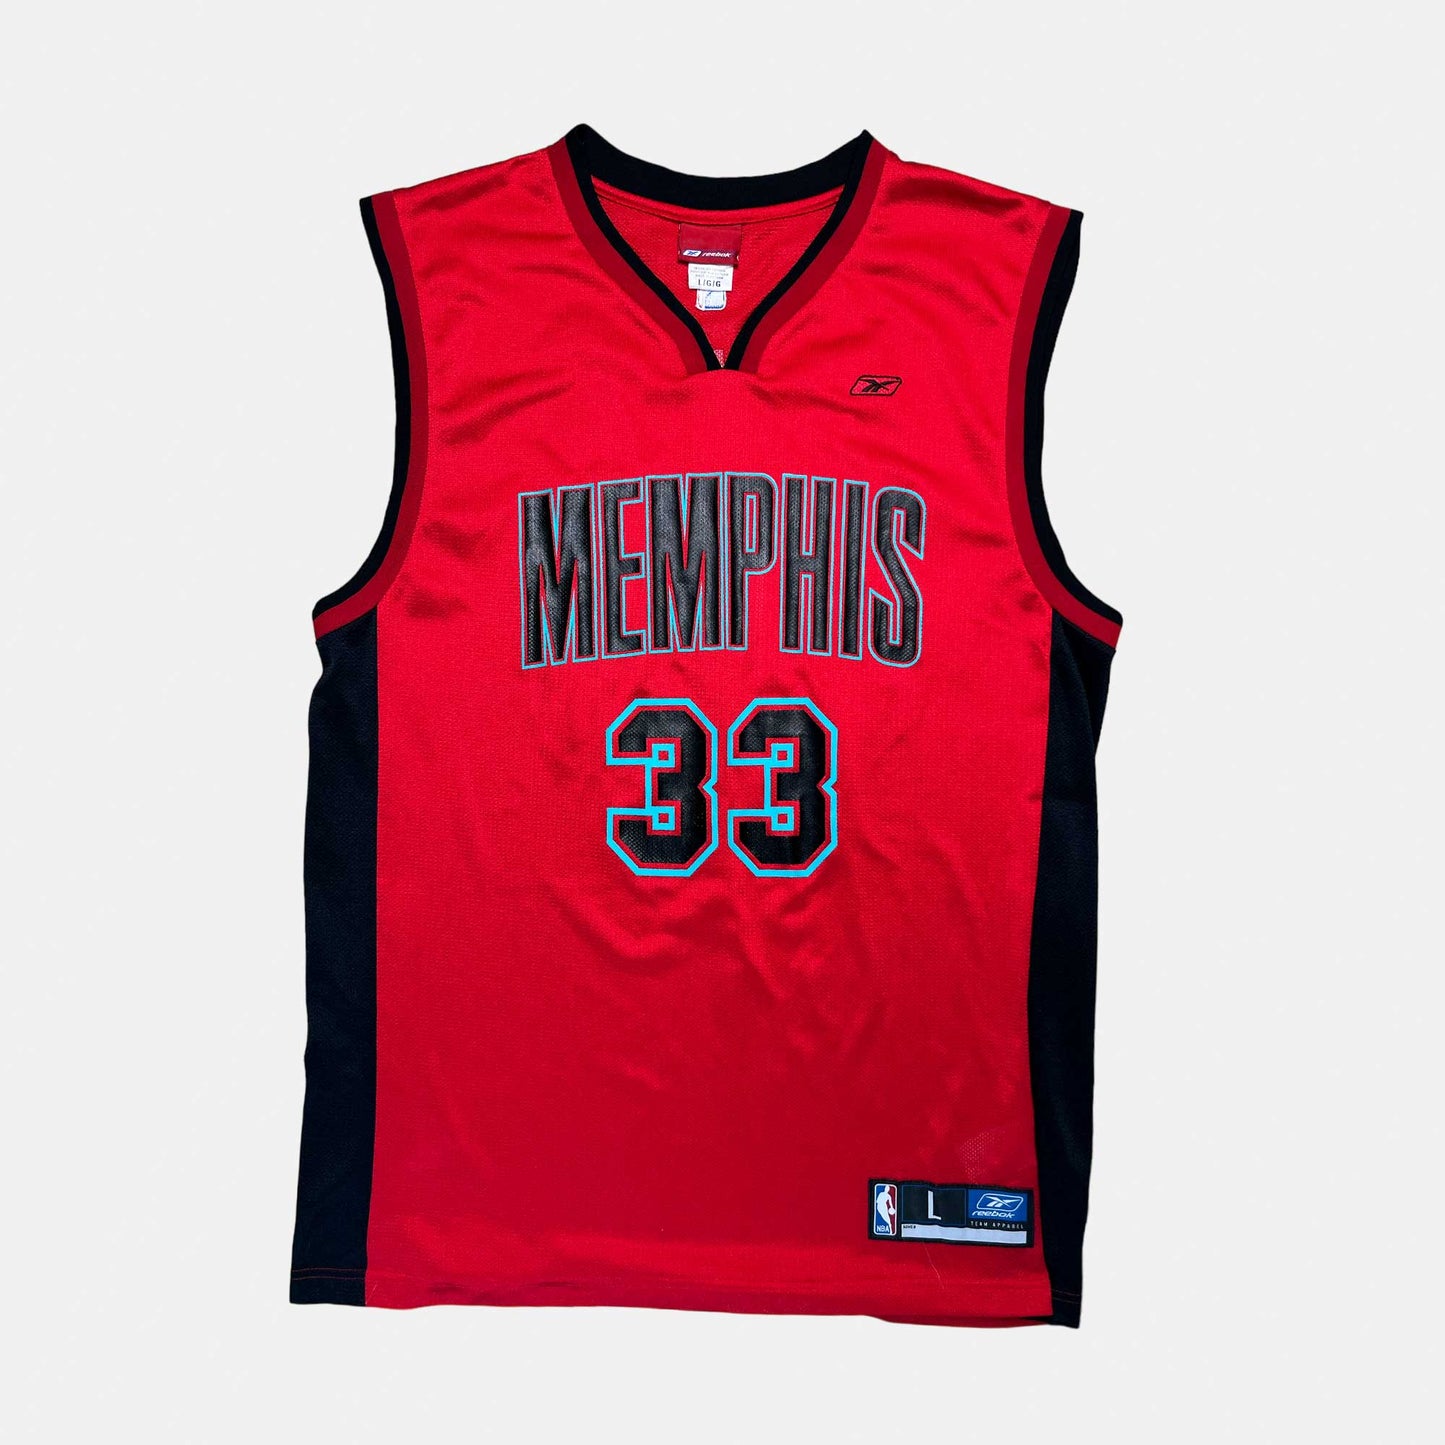 Memphis Grizzlies - Mike Miller - Größe L - Reebok - NBA Trikot